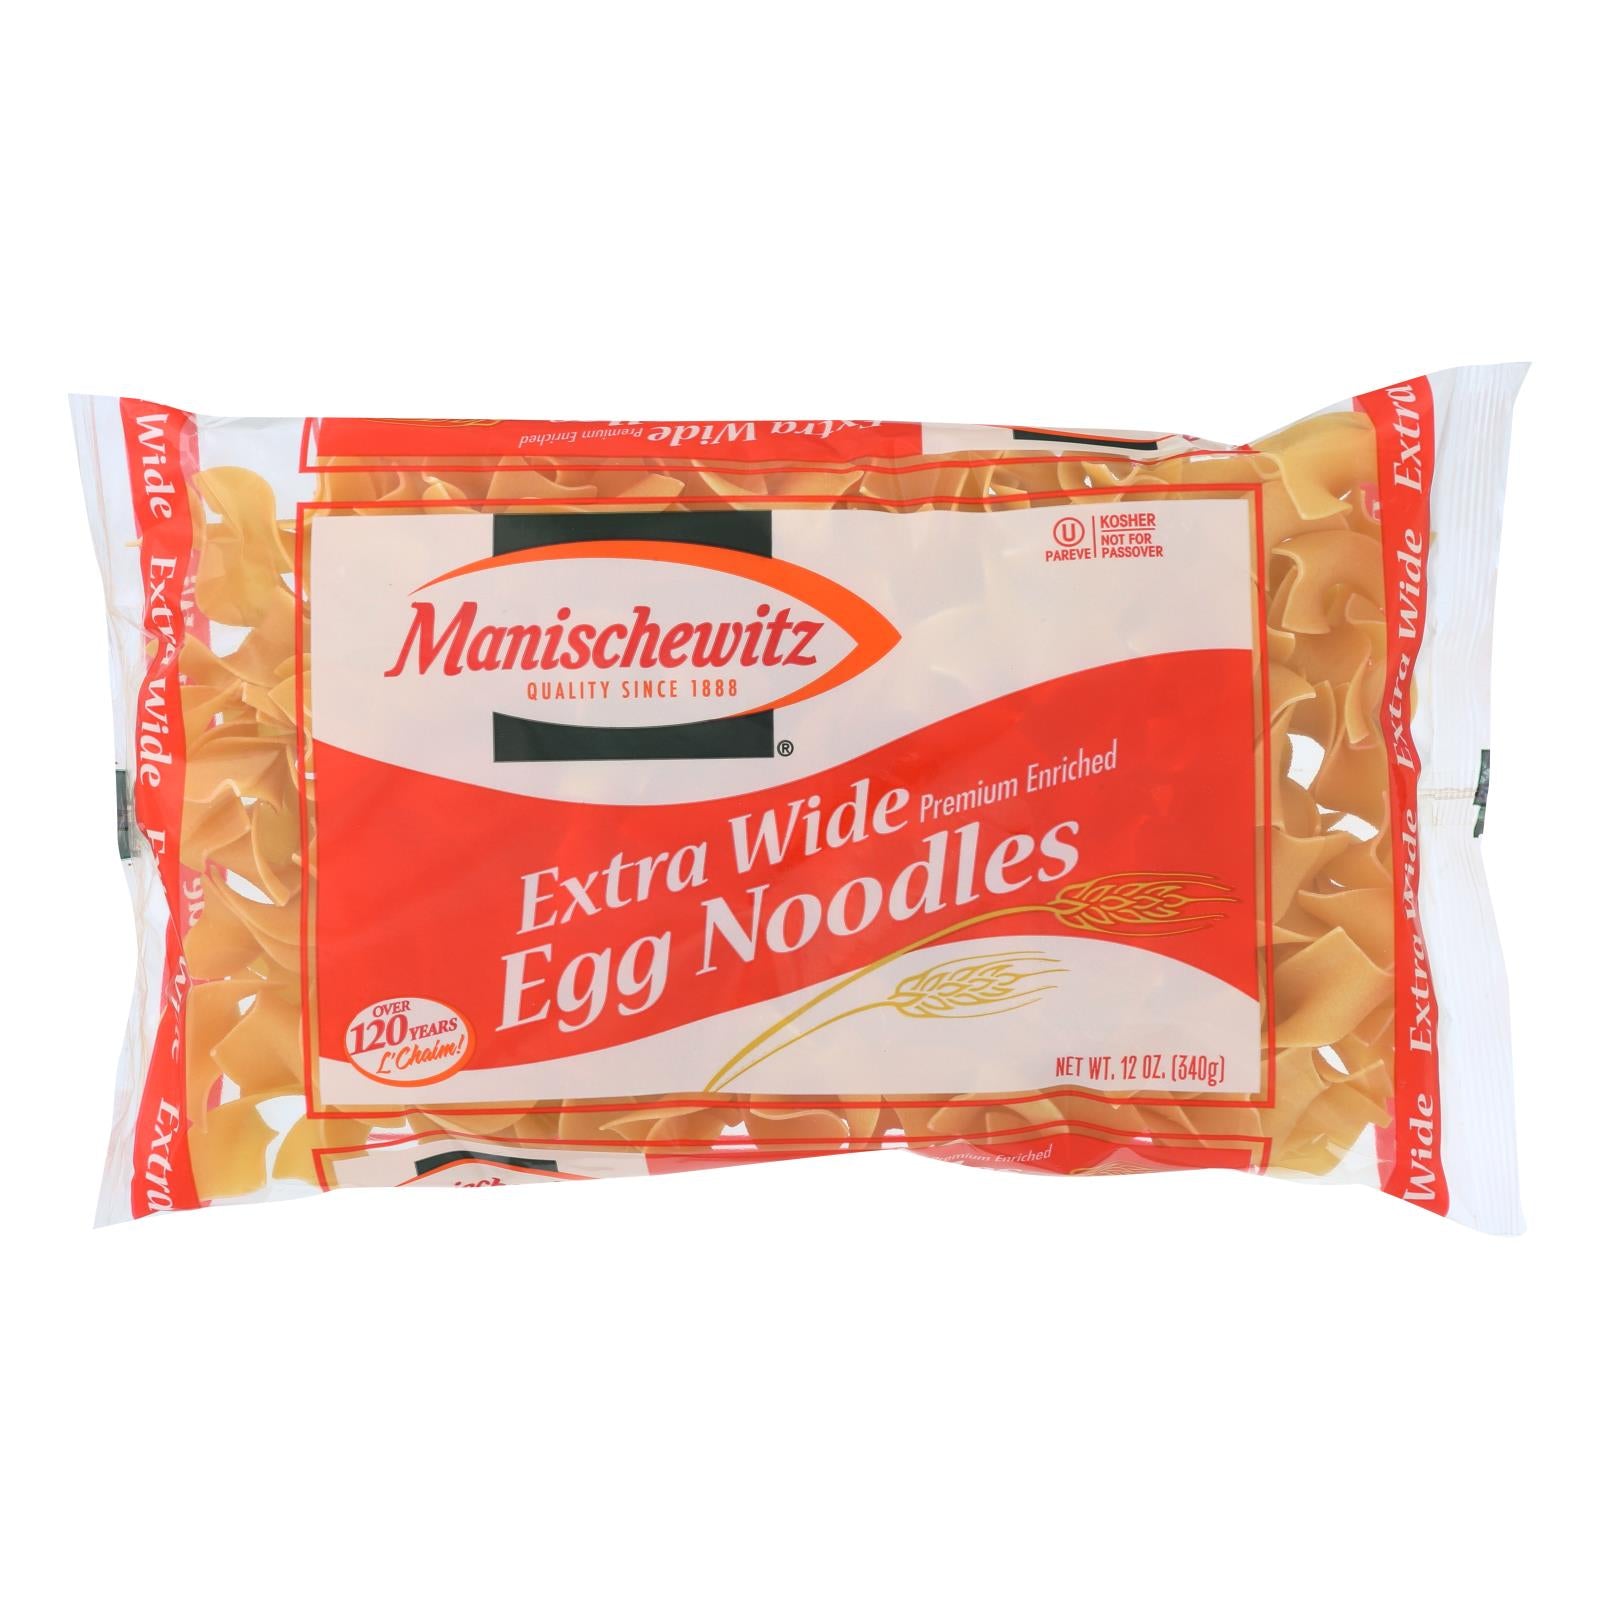 Manischewitz - Extra Wide Egg Noodles - Case Of 12 - 12 Oz.